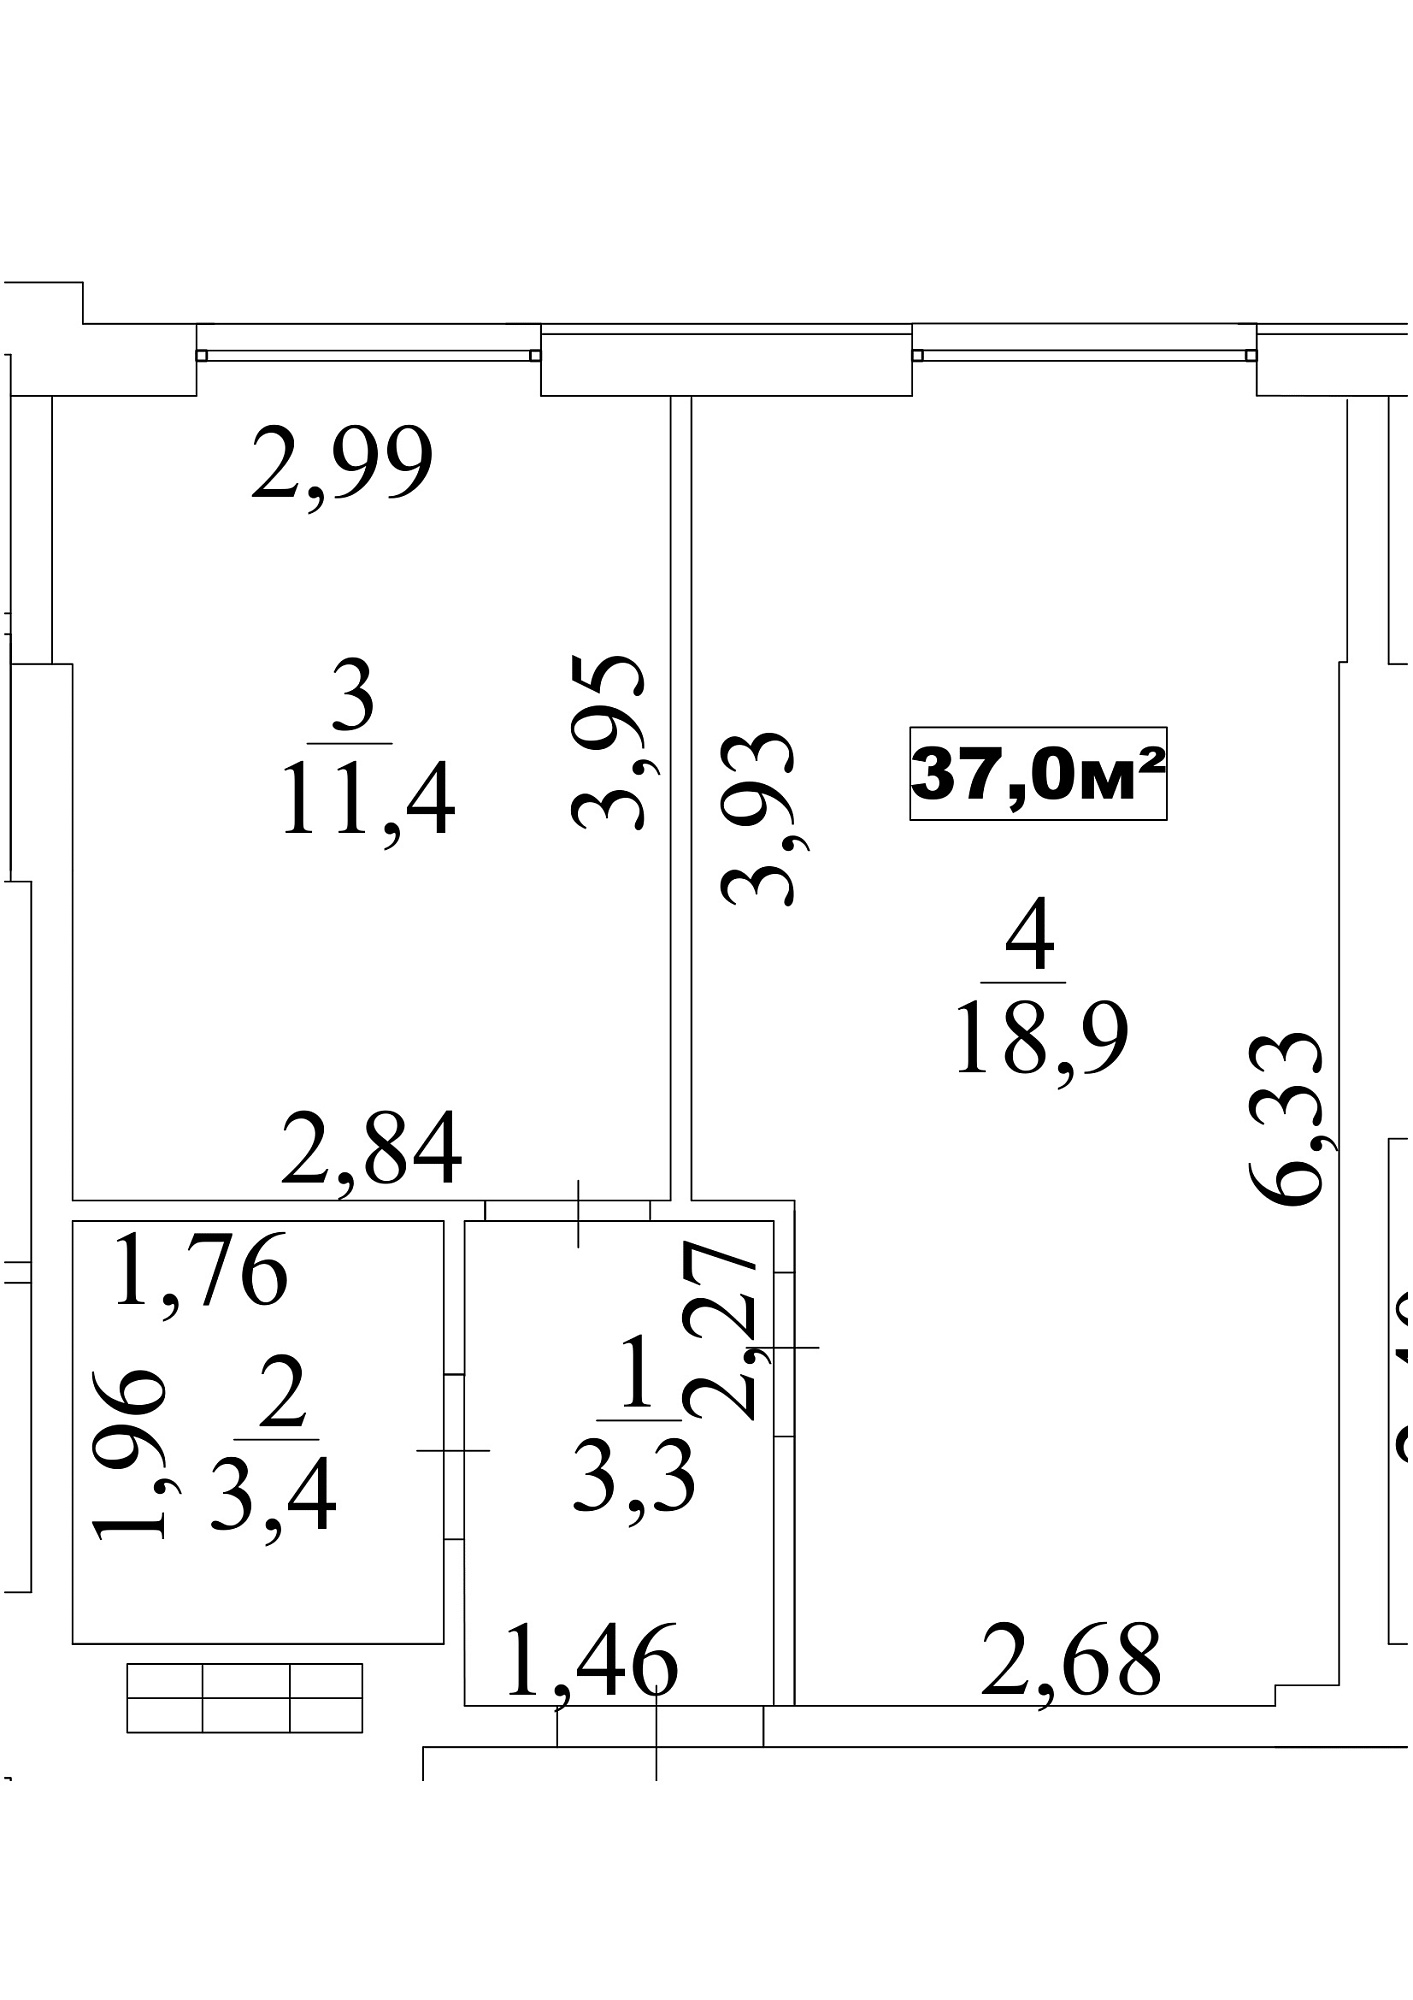 Планировка 1-к квартира площей 37м2, AB-10-03/00024.